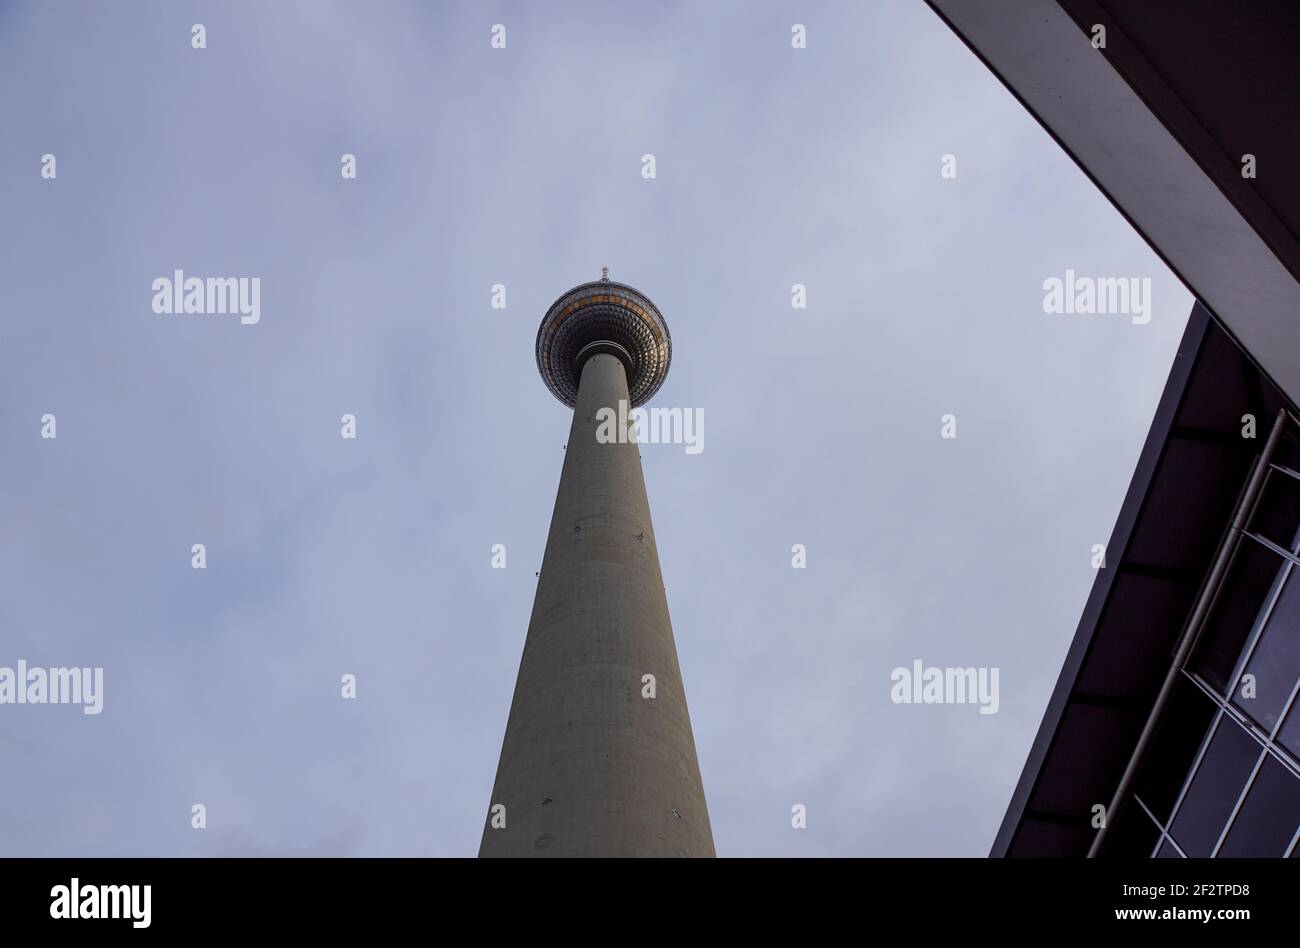 La torre de televisión, situado en la plaza Alexanderplatz, en Berlín, Alemania Foto de stock